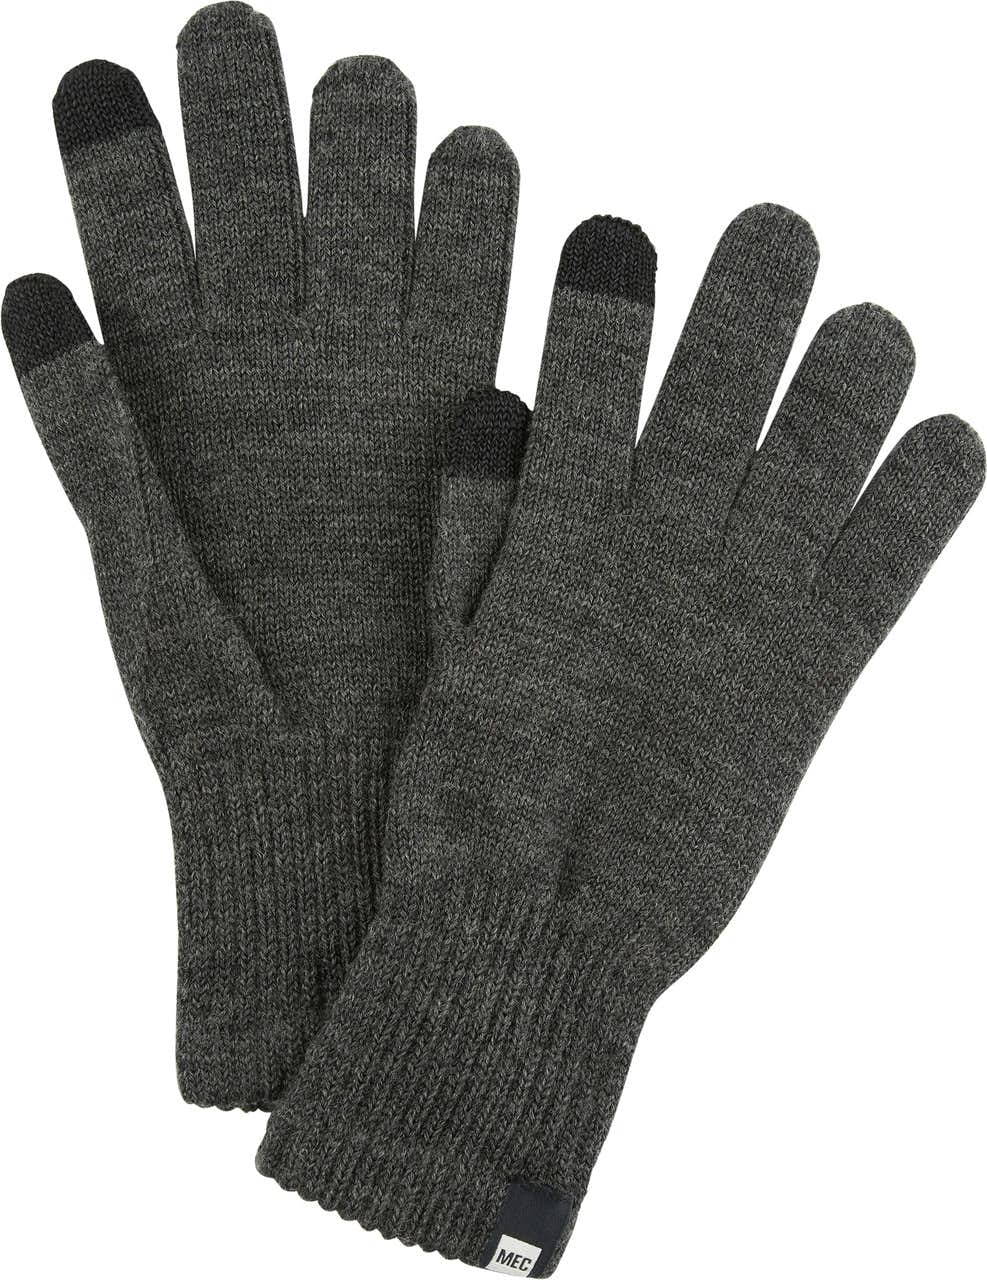 Sous-gants en laine mérinos Noir chiné